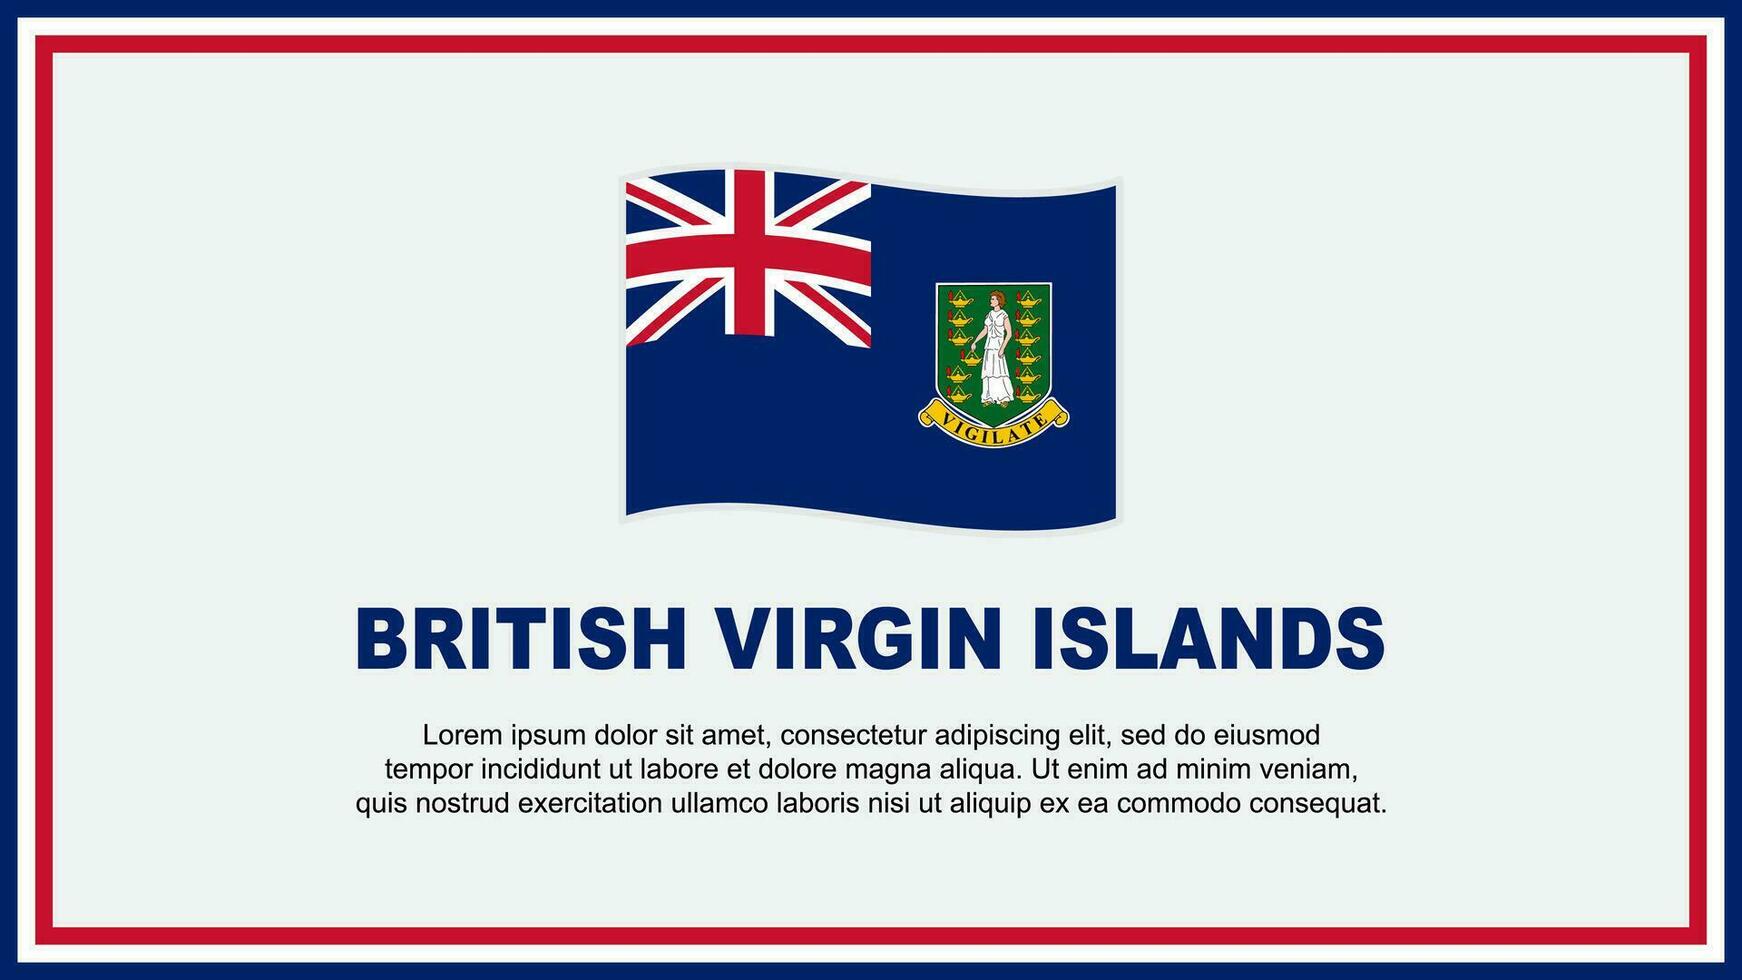 British Virgin Islands Flag Abstract Background Design Template. British Virgin Islands Independence Day Banner Social Media Vector Illustration. Banner